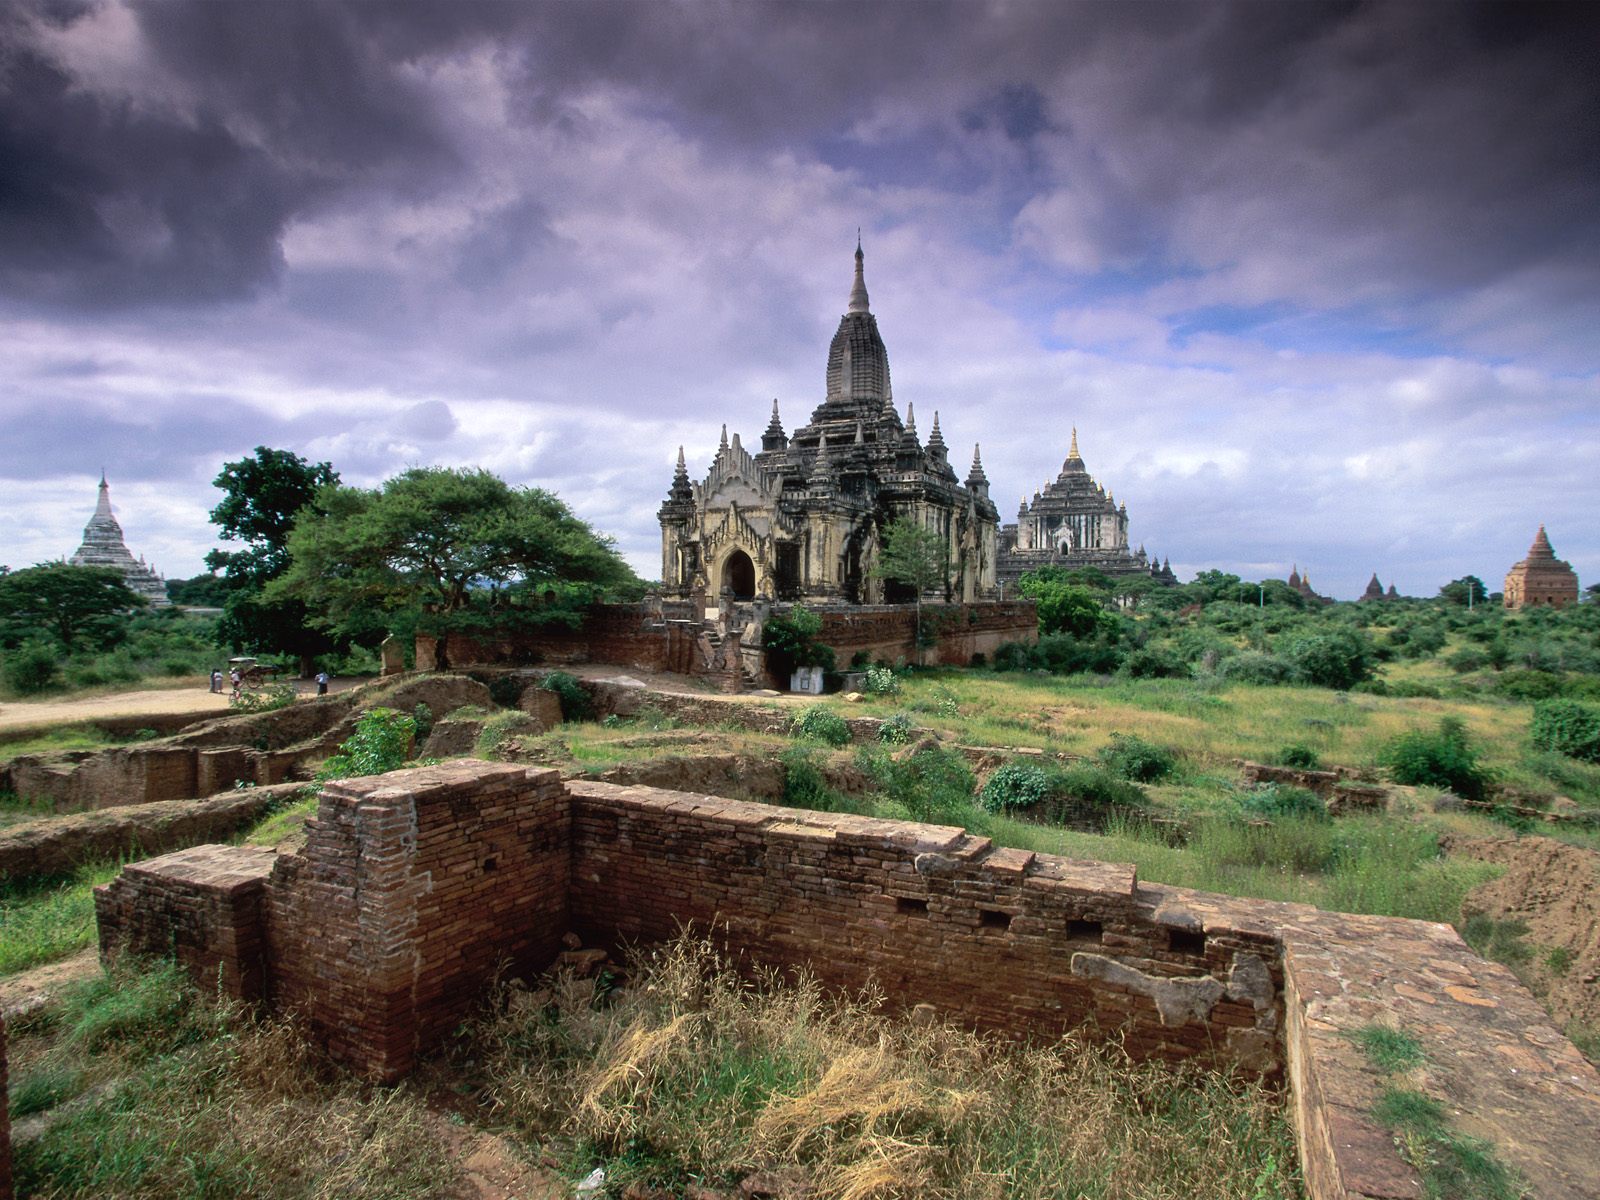 Баган, Мьянма, красивые замки Природа картинки, обои рабочий стол